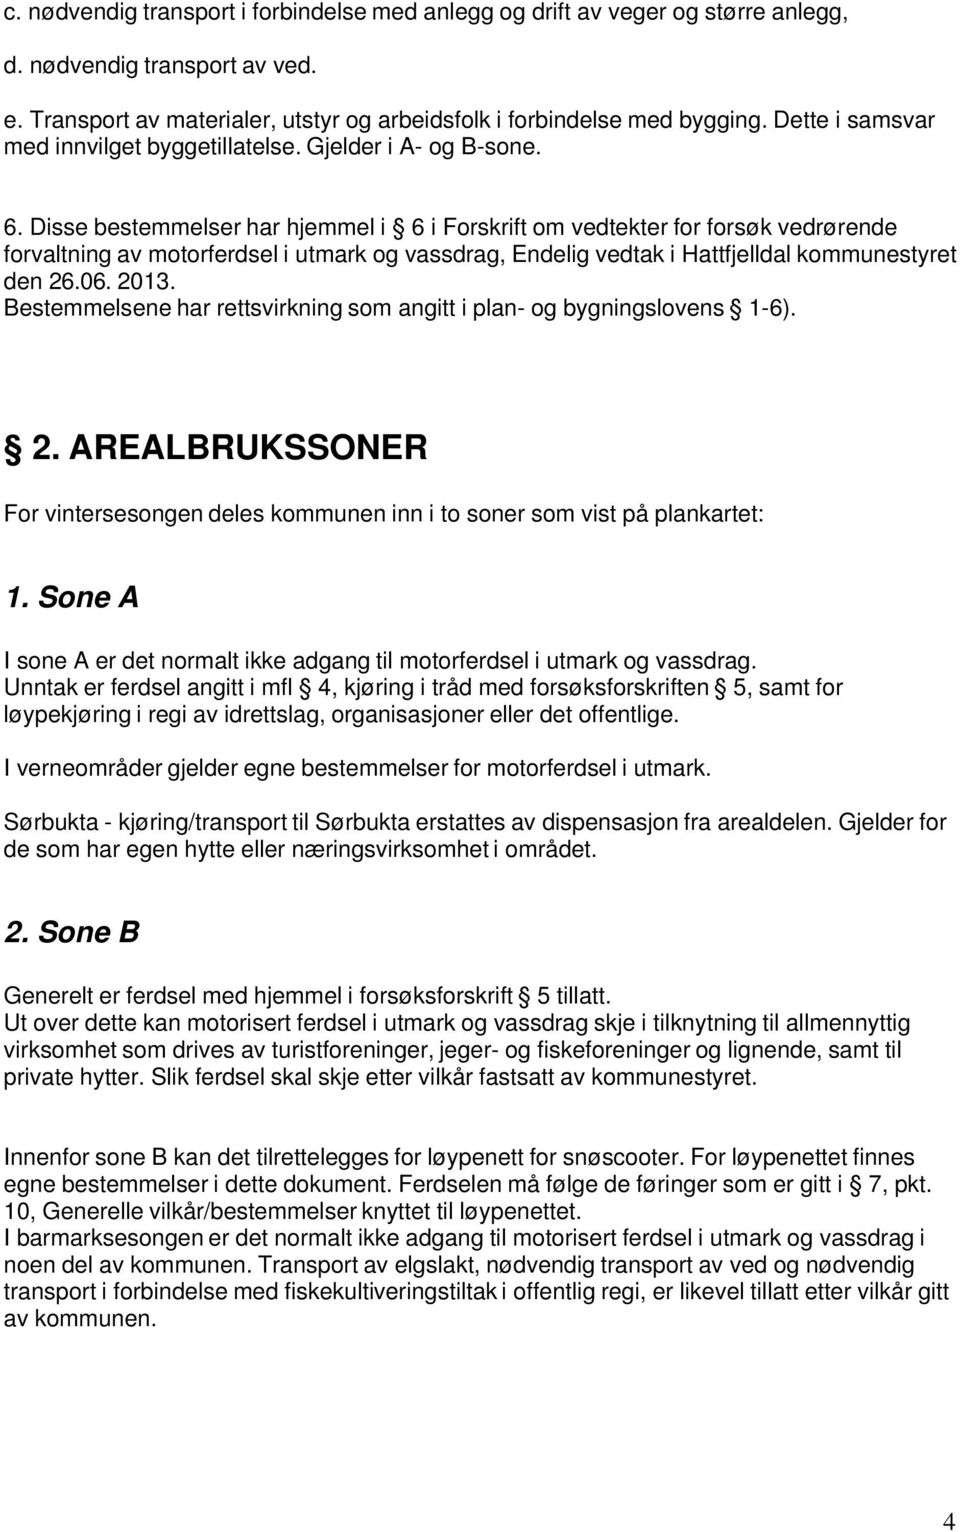 Disse bestemmelser har hjemmel i 6 i Forskrift om vedtekter for forsøk vedrørende forvaltning av motorferdsel i utmark og vassdrag, Endelig vedtak i Hattfjelldal kommunestyret den 26.06. 2013.